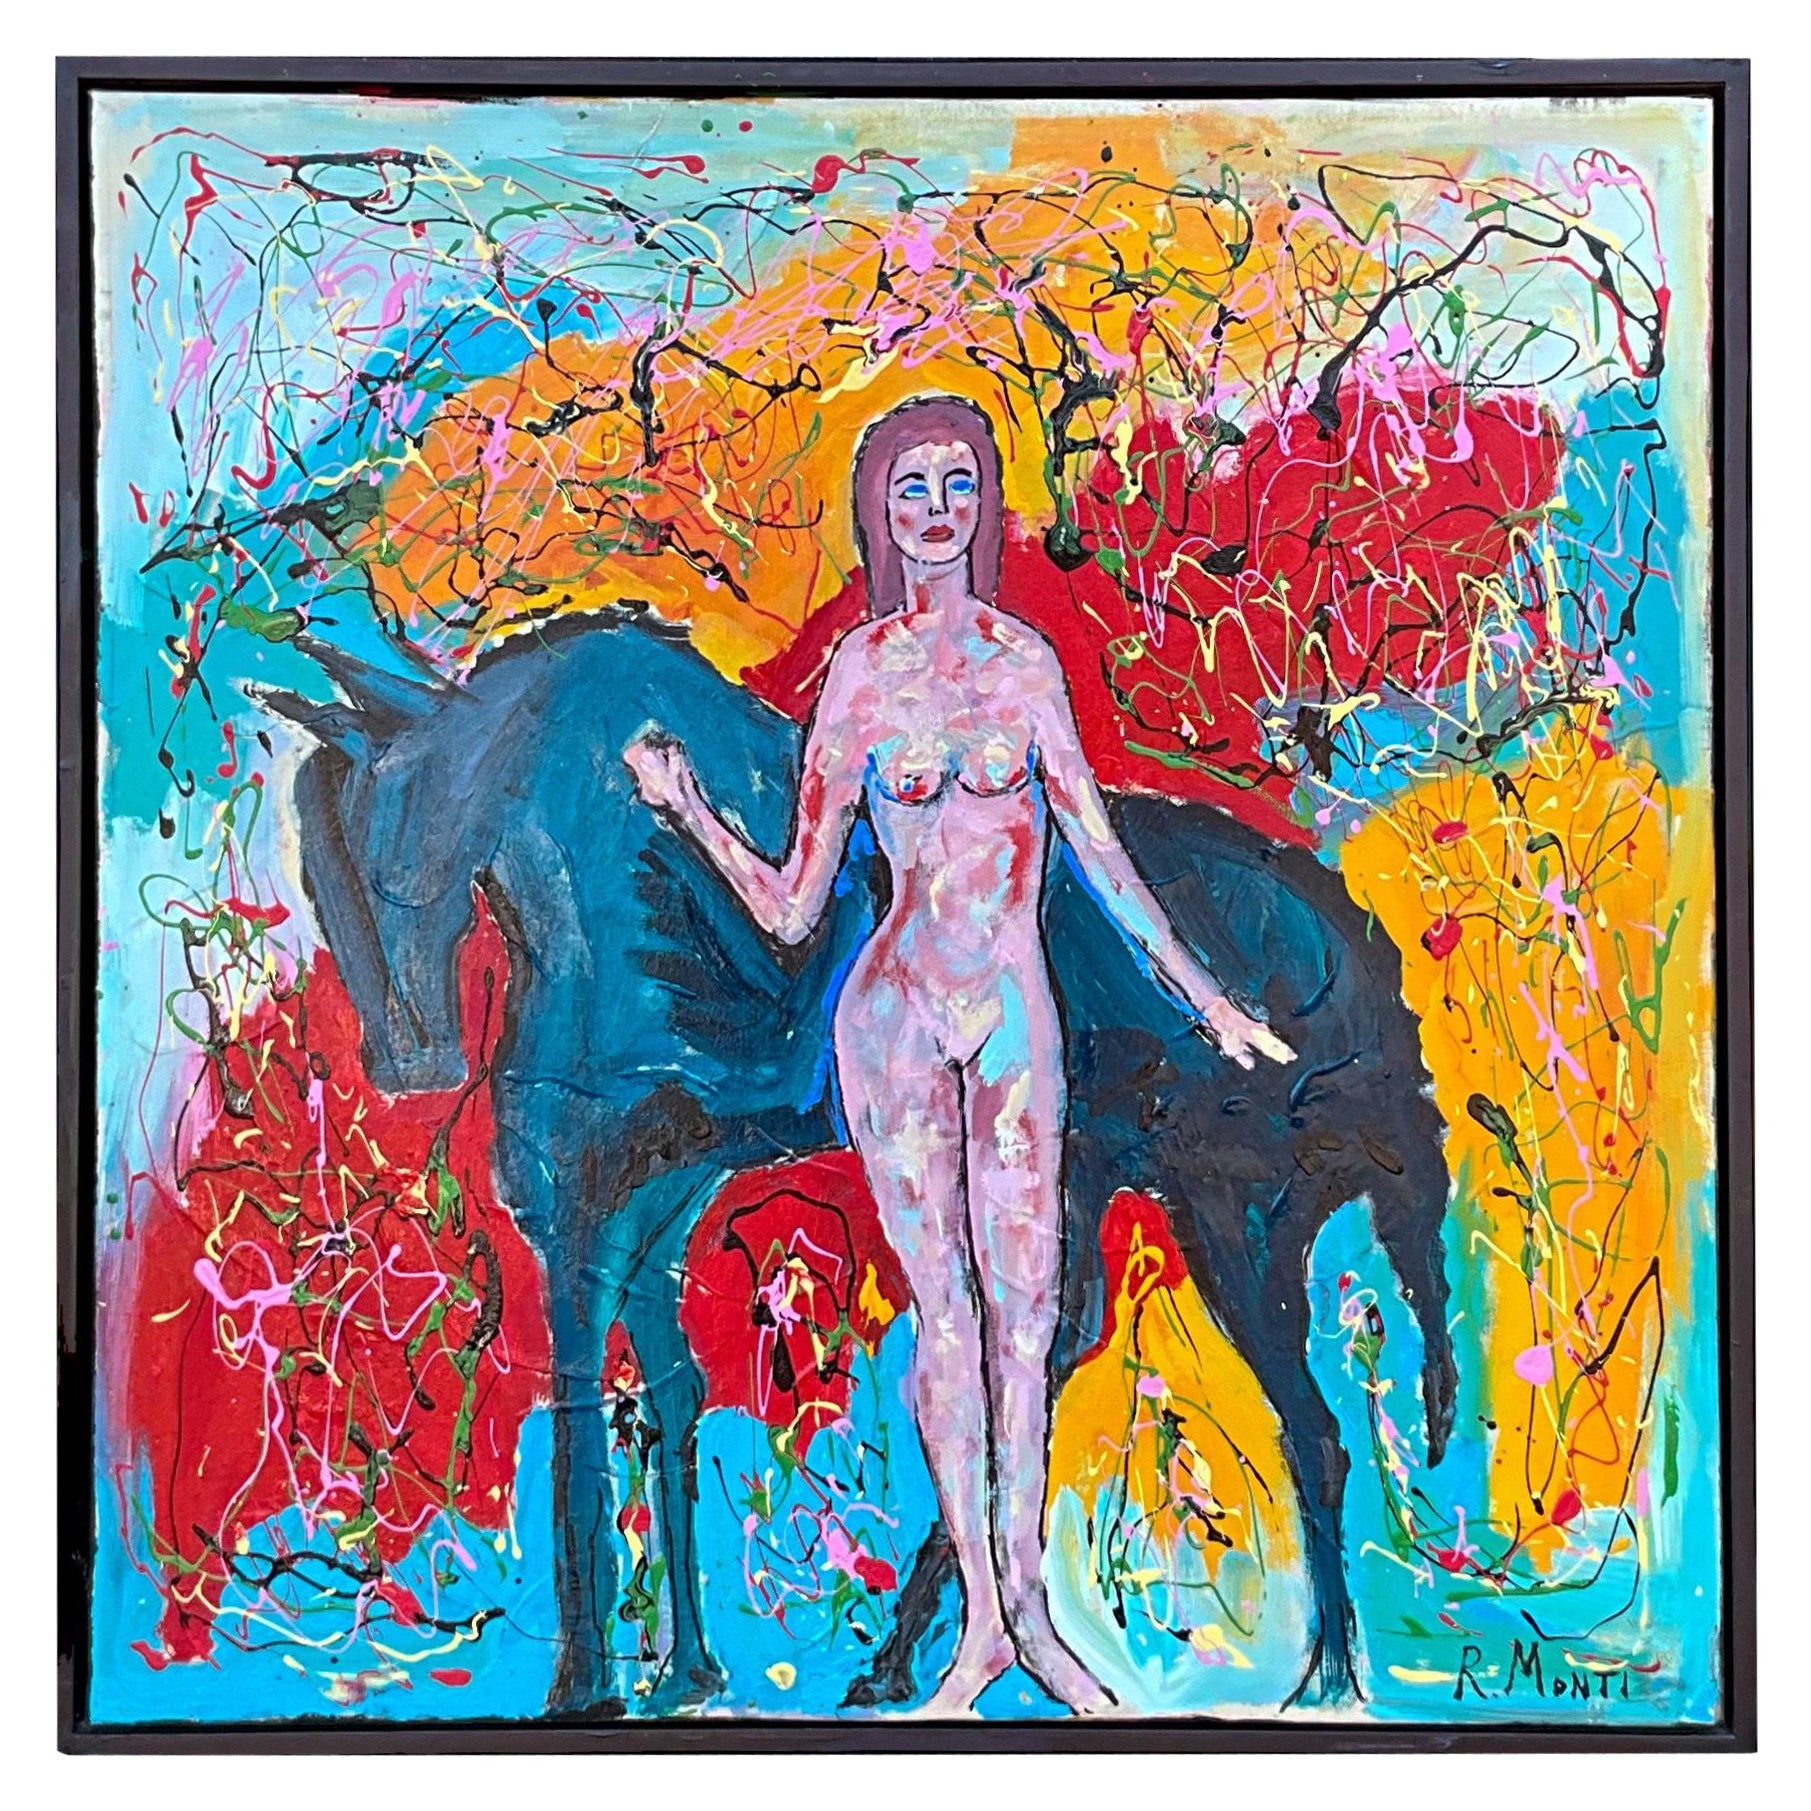 Grande huile sur toile abstraite moderne encadrée et signée, représentant une femme nue avec un cheval 